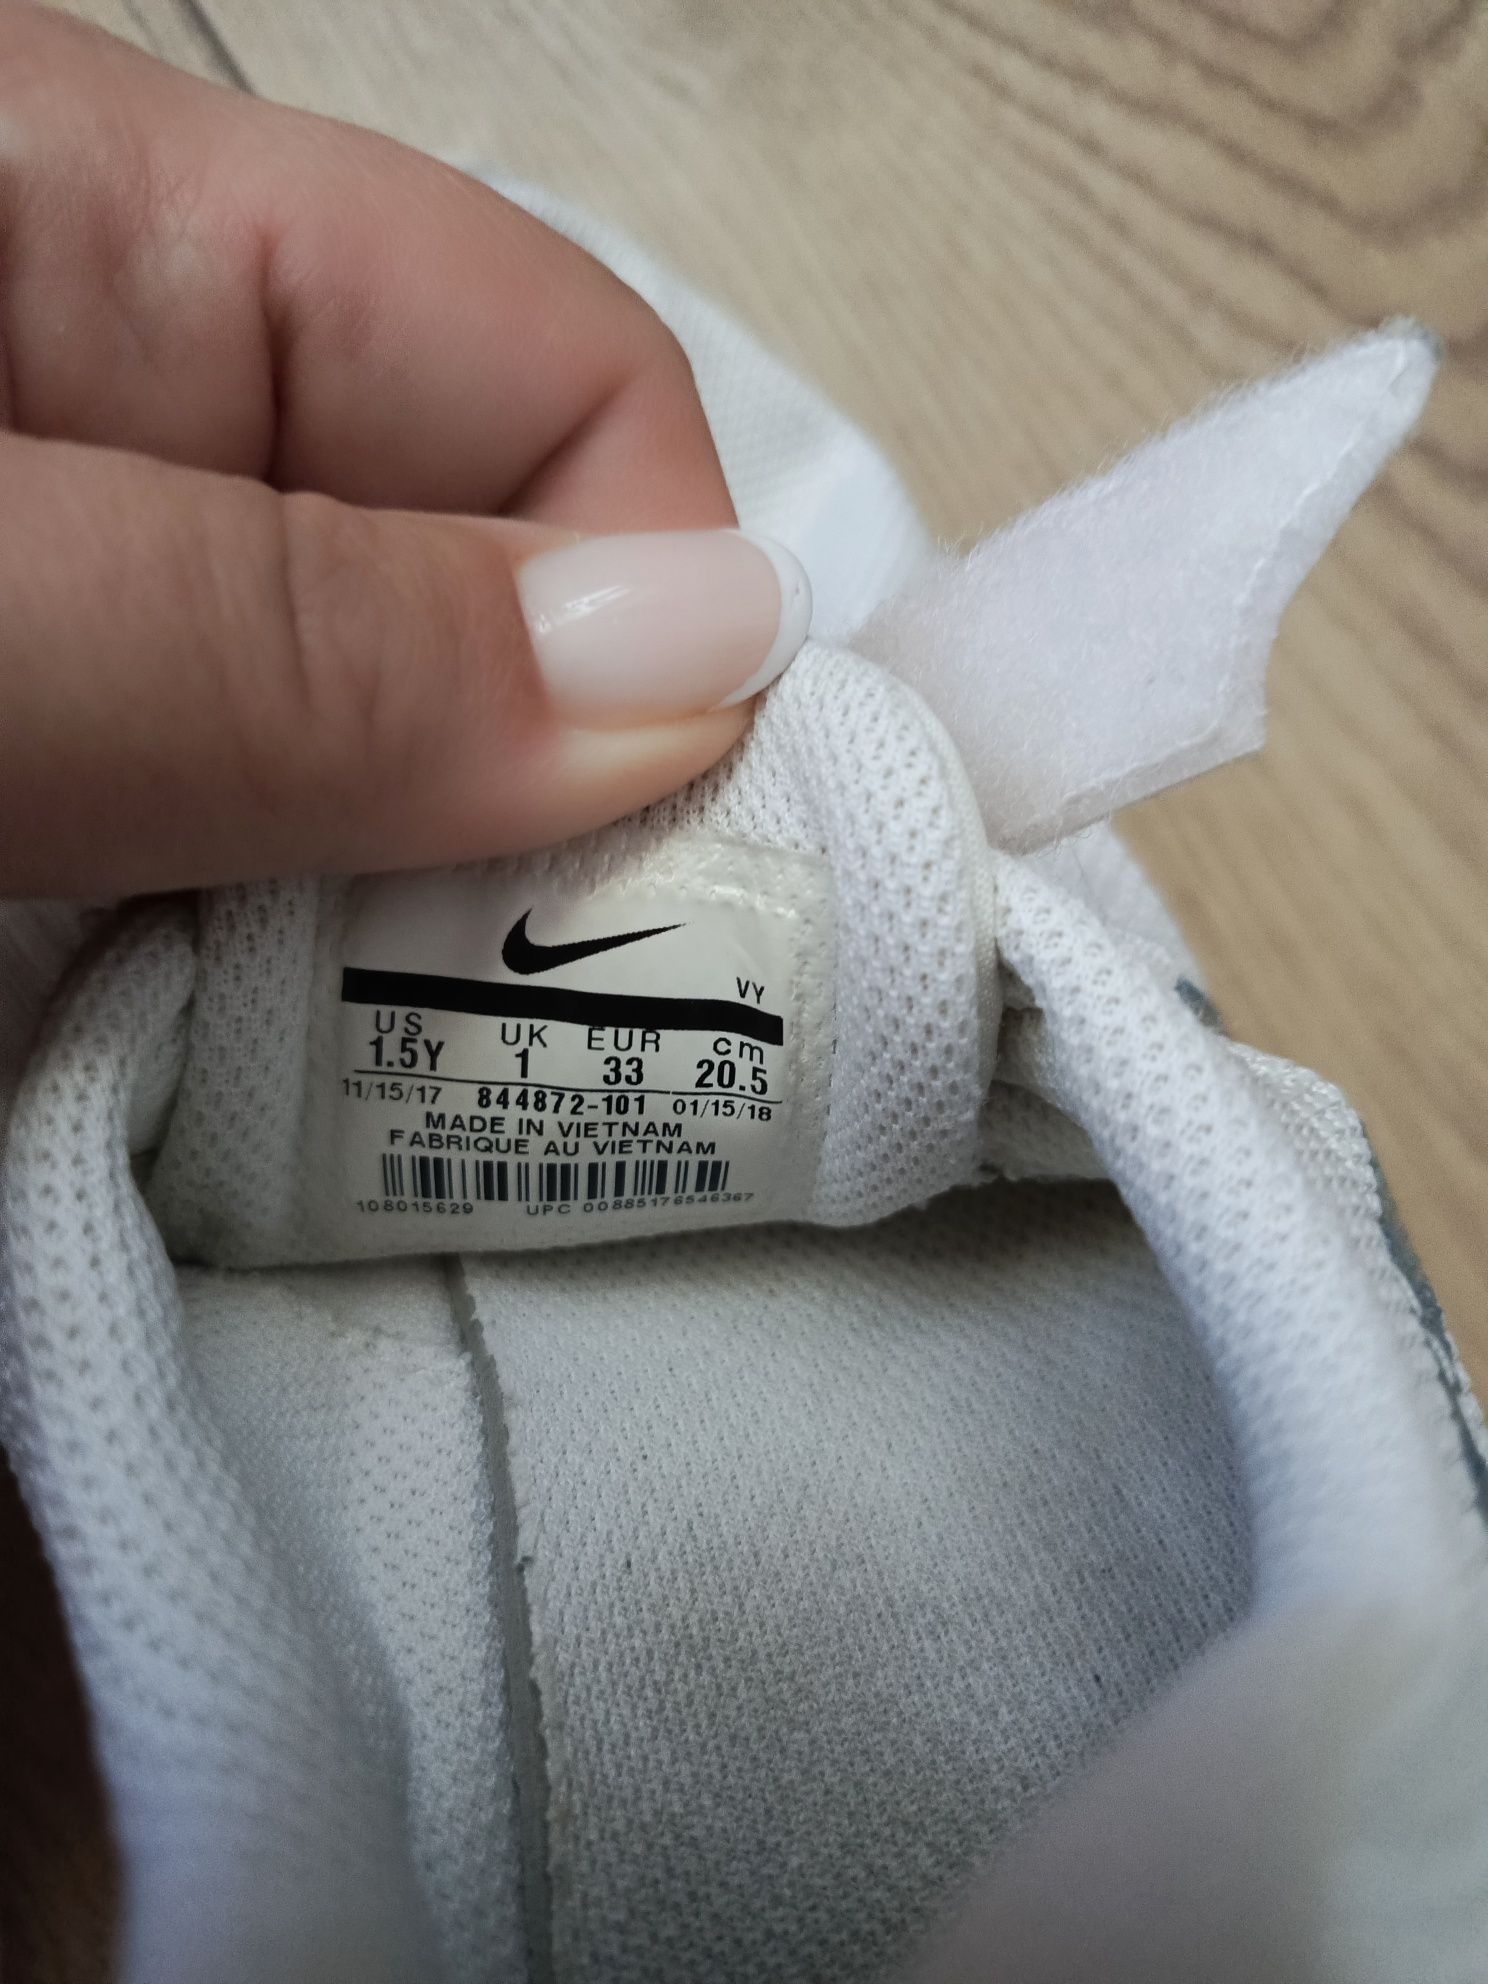 Lekkie Nike rozmiar 33, dł. wkładki 20,5